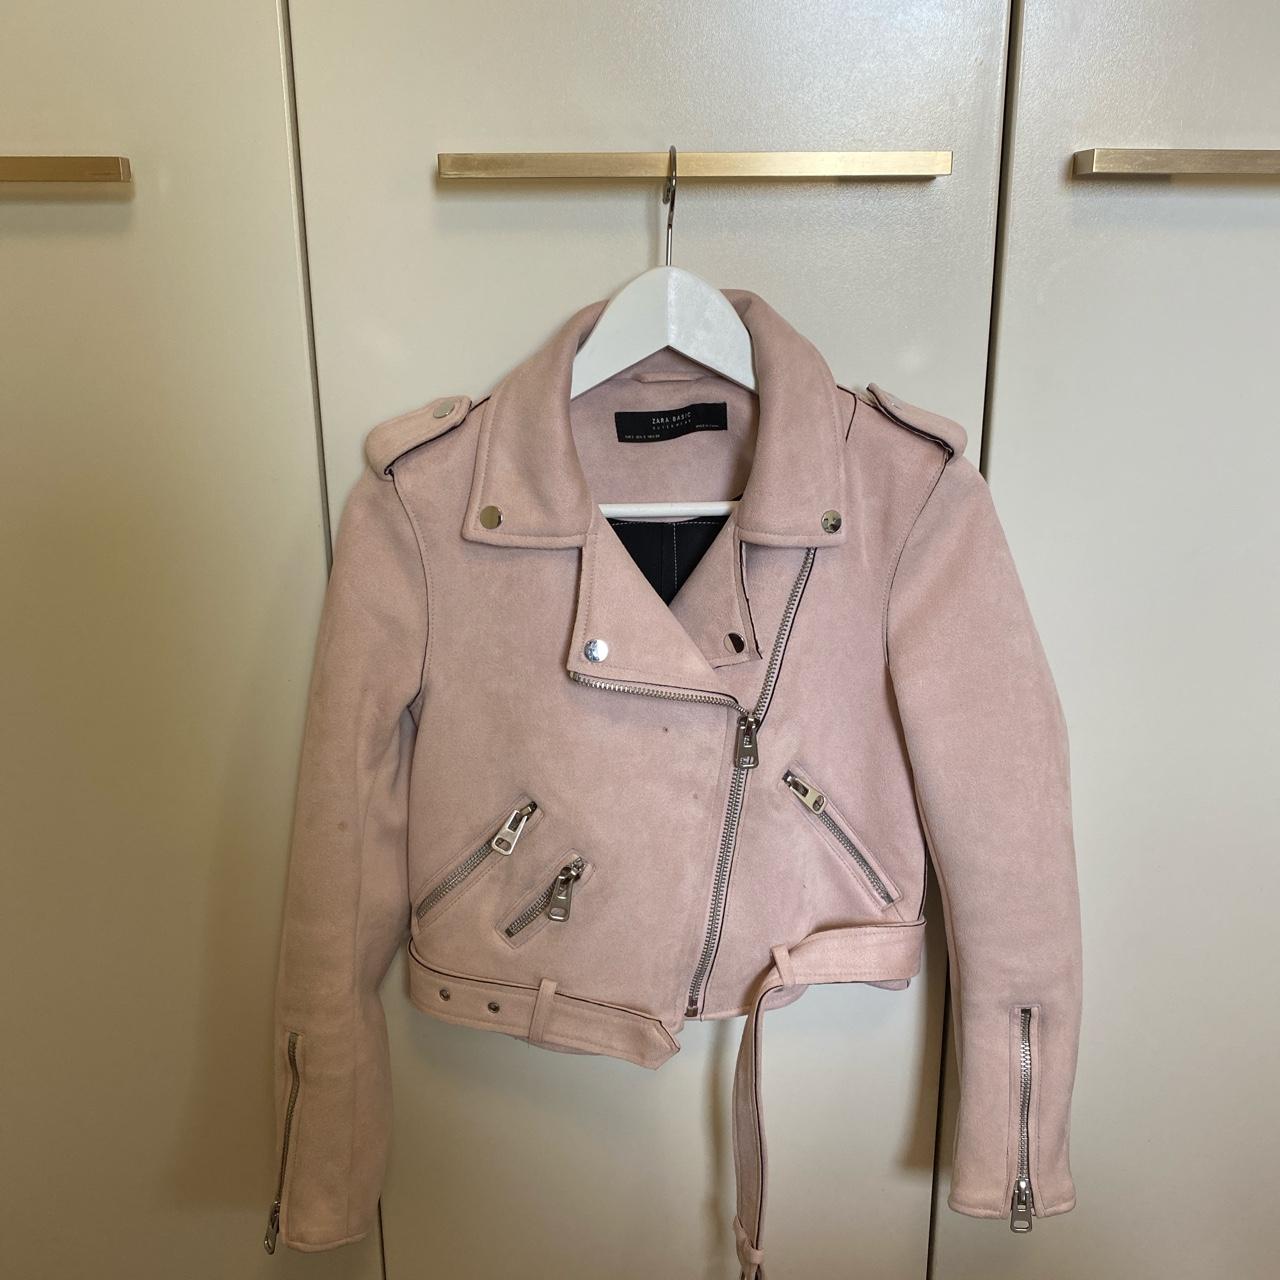 Zara Basic Pink Suede Jacket! Fits a size 8-10 DM... - Depop